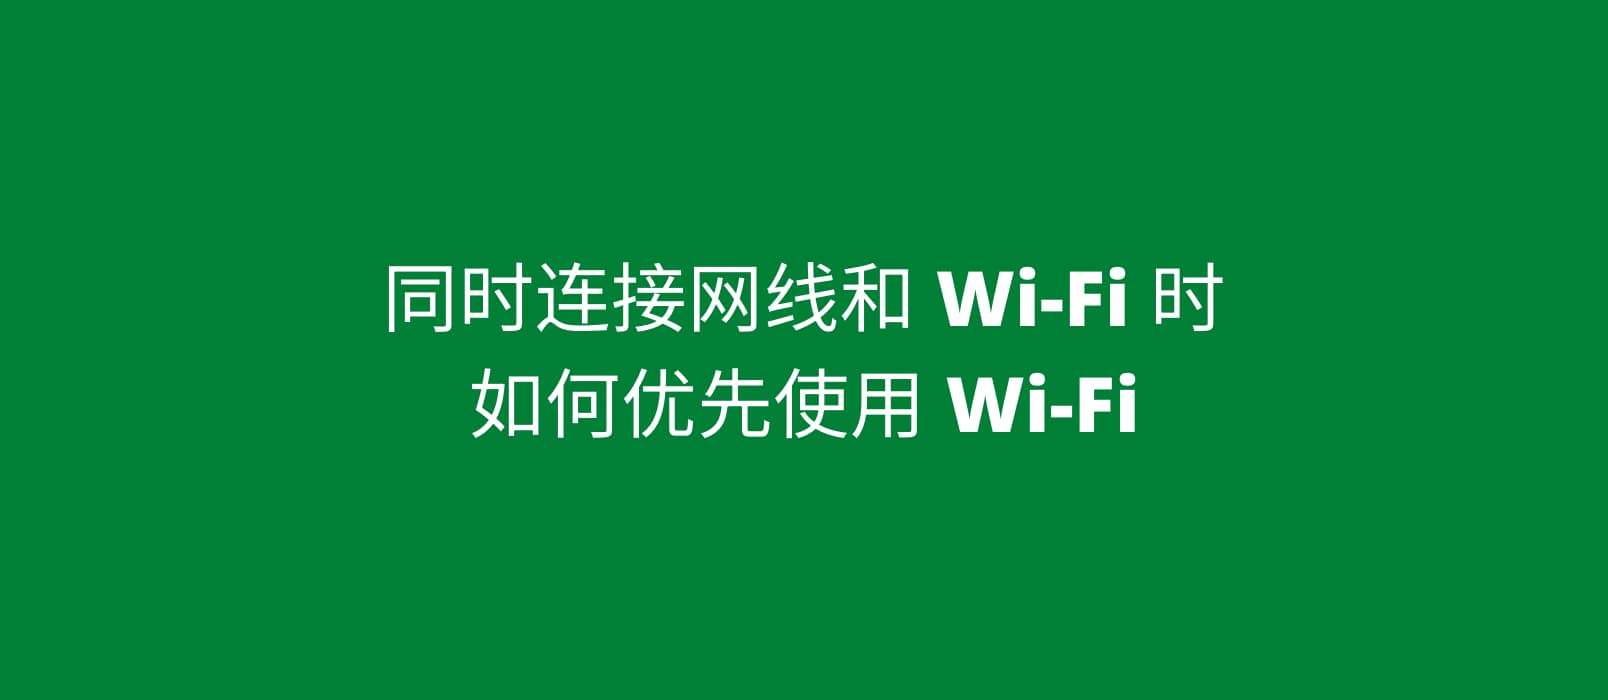 同时连接网线和 Wi-Fi，如何优先使用 Wi-Fi？试试接口跃点数